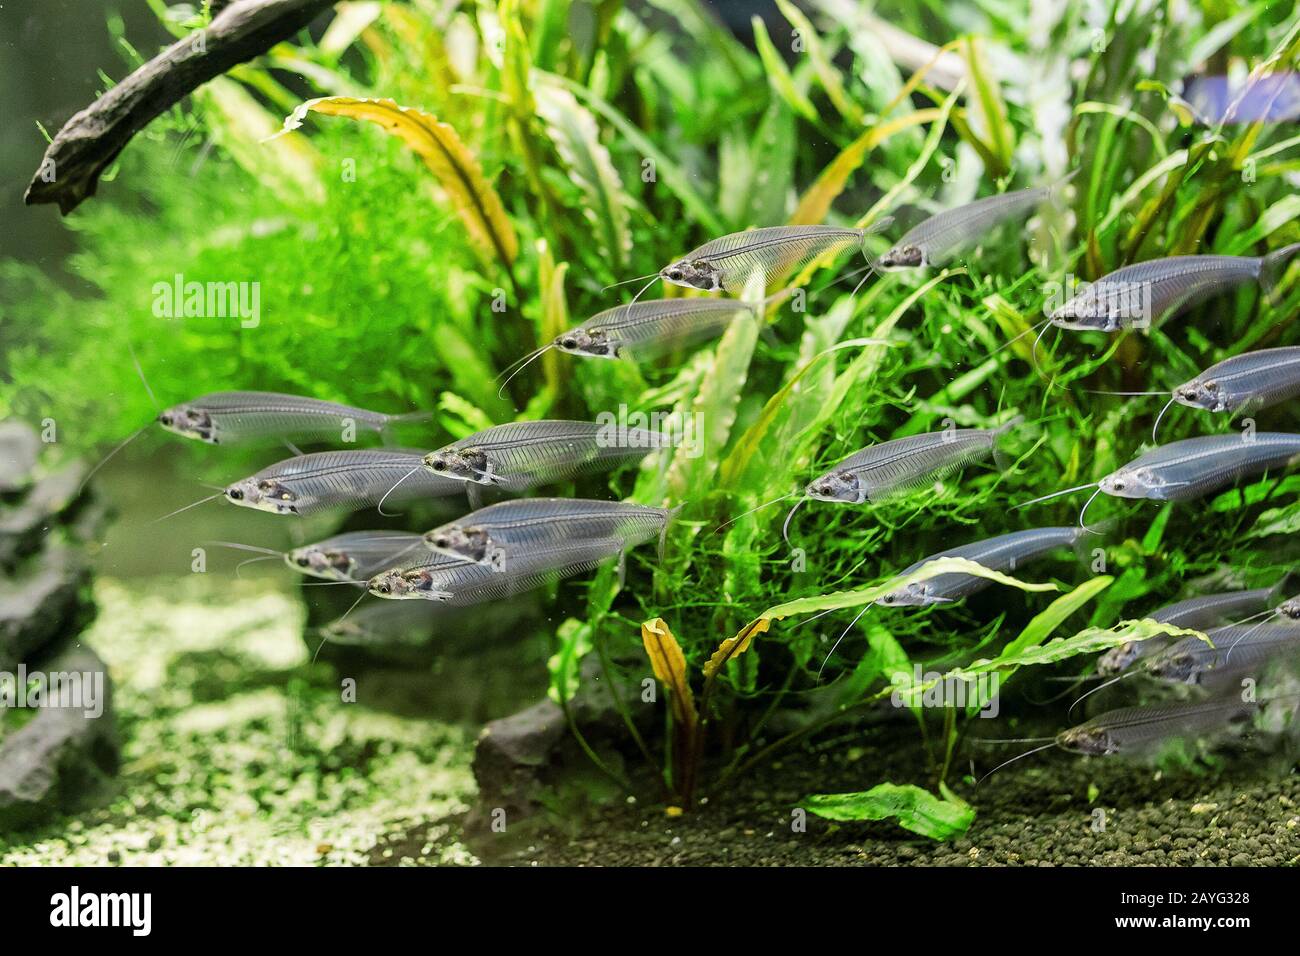 Unusual Glass catfish or ryptopterus vitreolus in aquarium Stock Photo